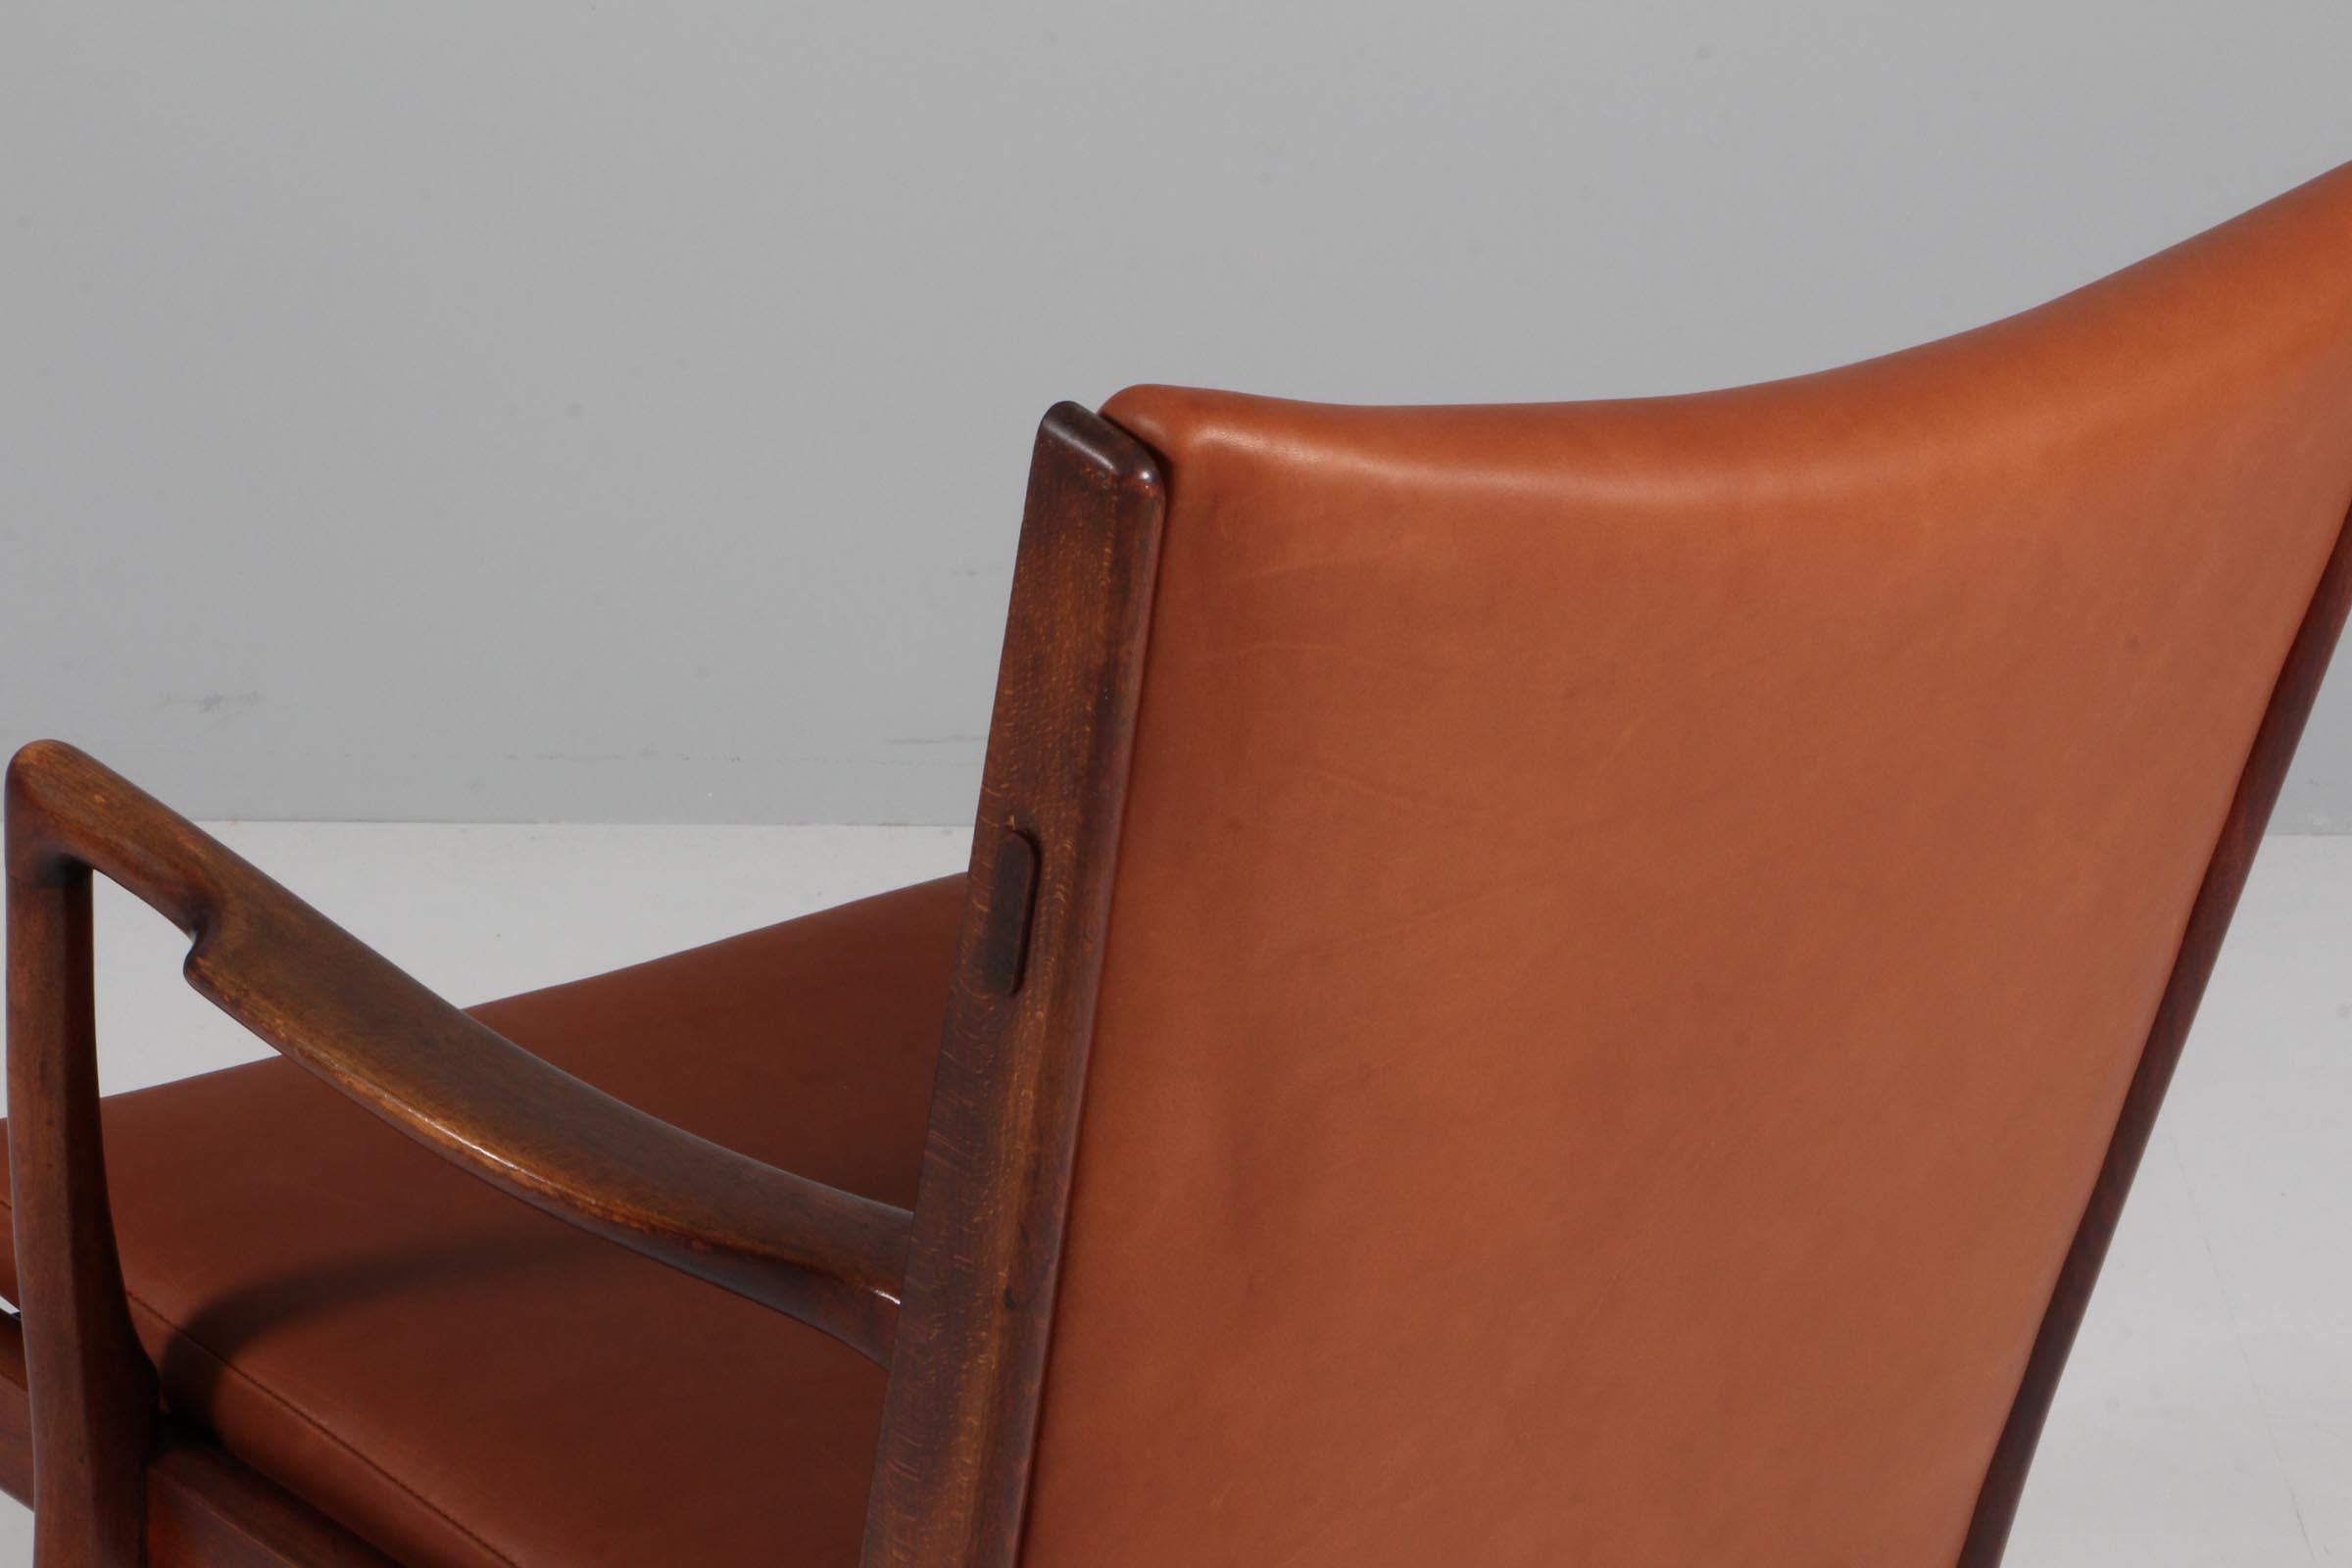 Lounge / armchair, Model AP16, by Hans Wegner for A.P. Stolen. Full grain 1